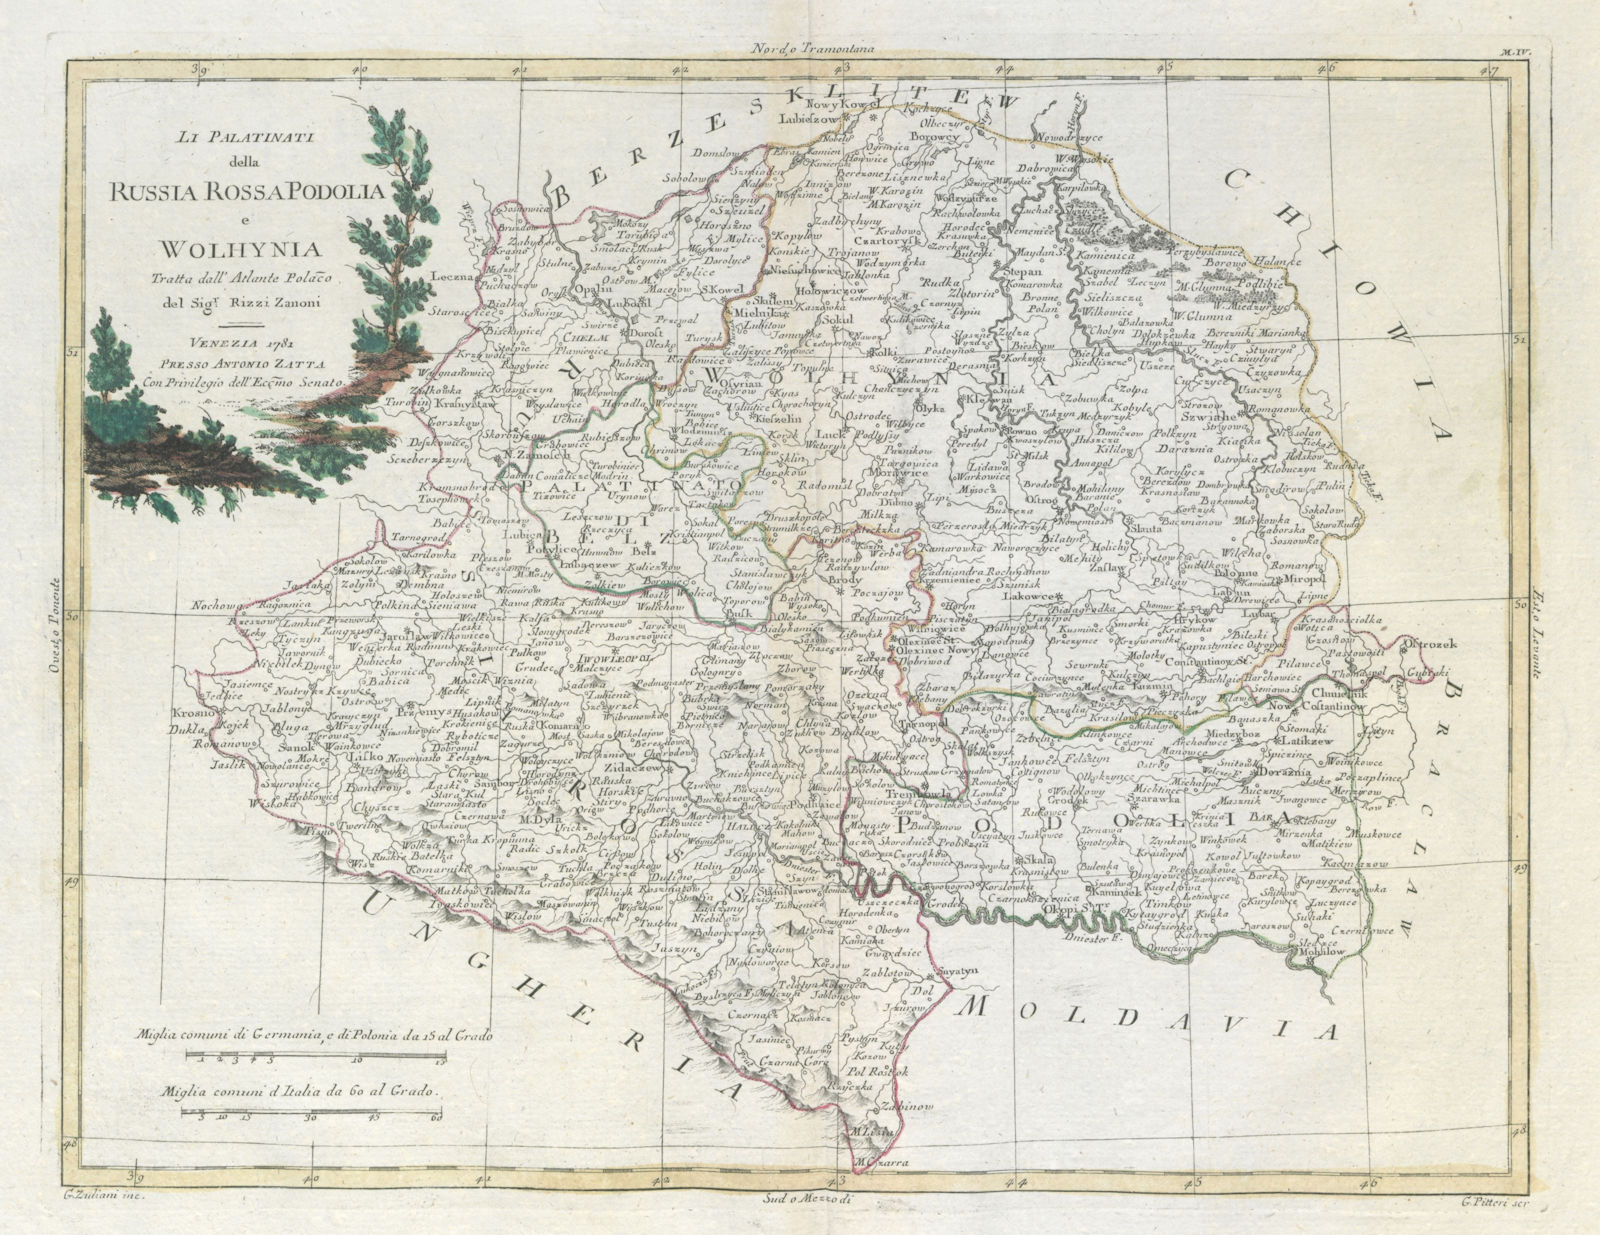 Associate Product "Li Palatinati della Russia Rossa, Podolia…" SE Poland W Ukraine. ZATTA 1783 map